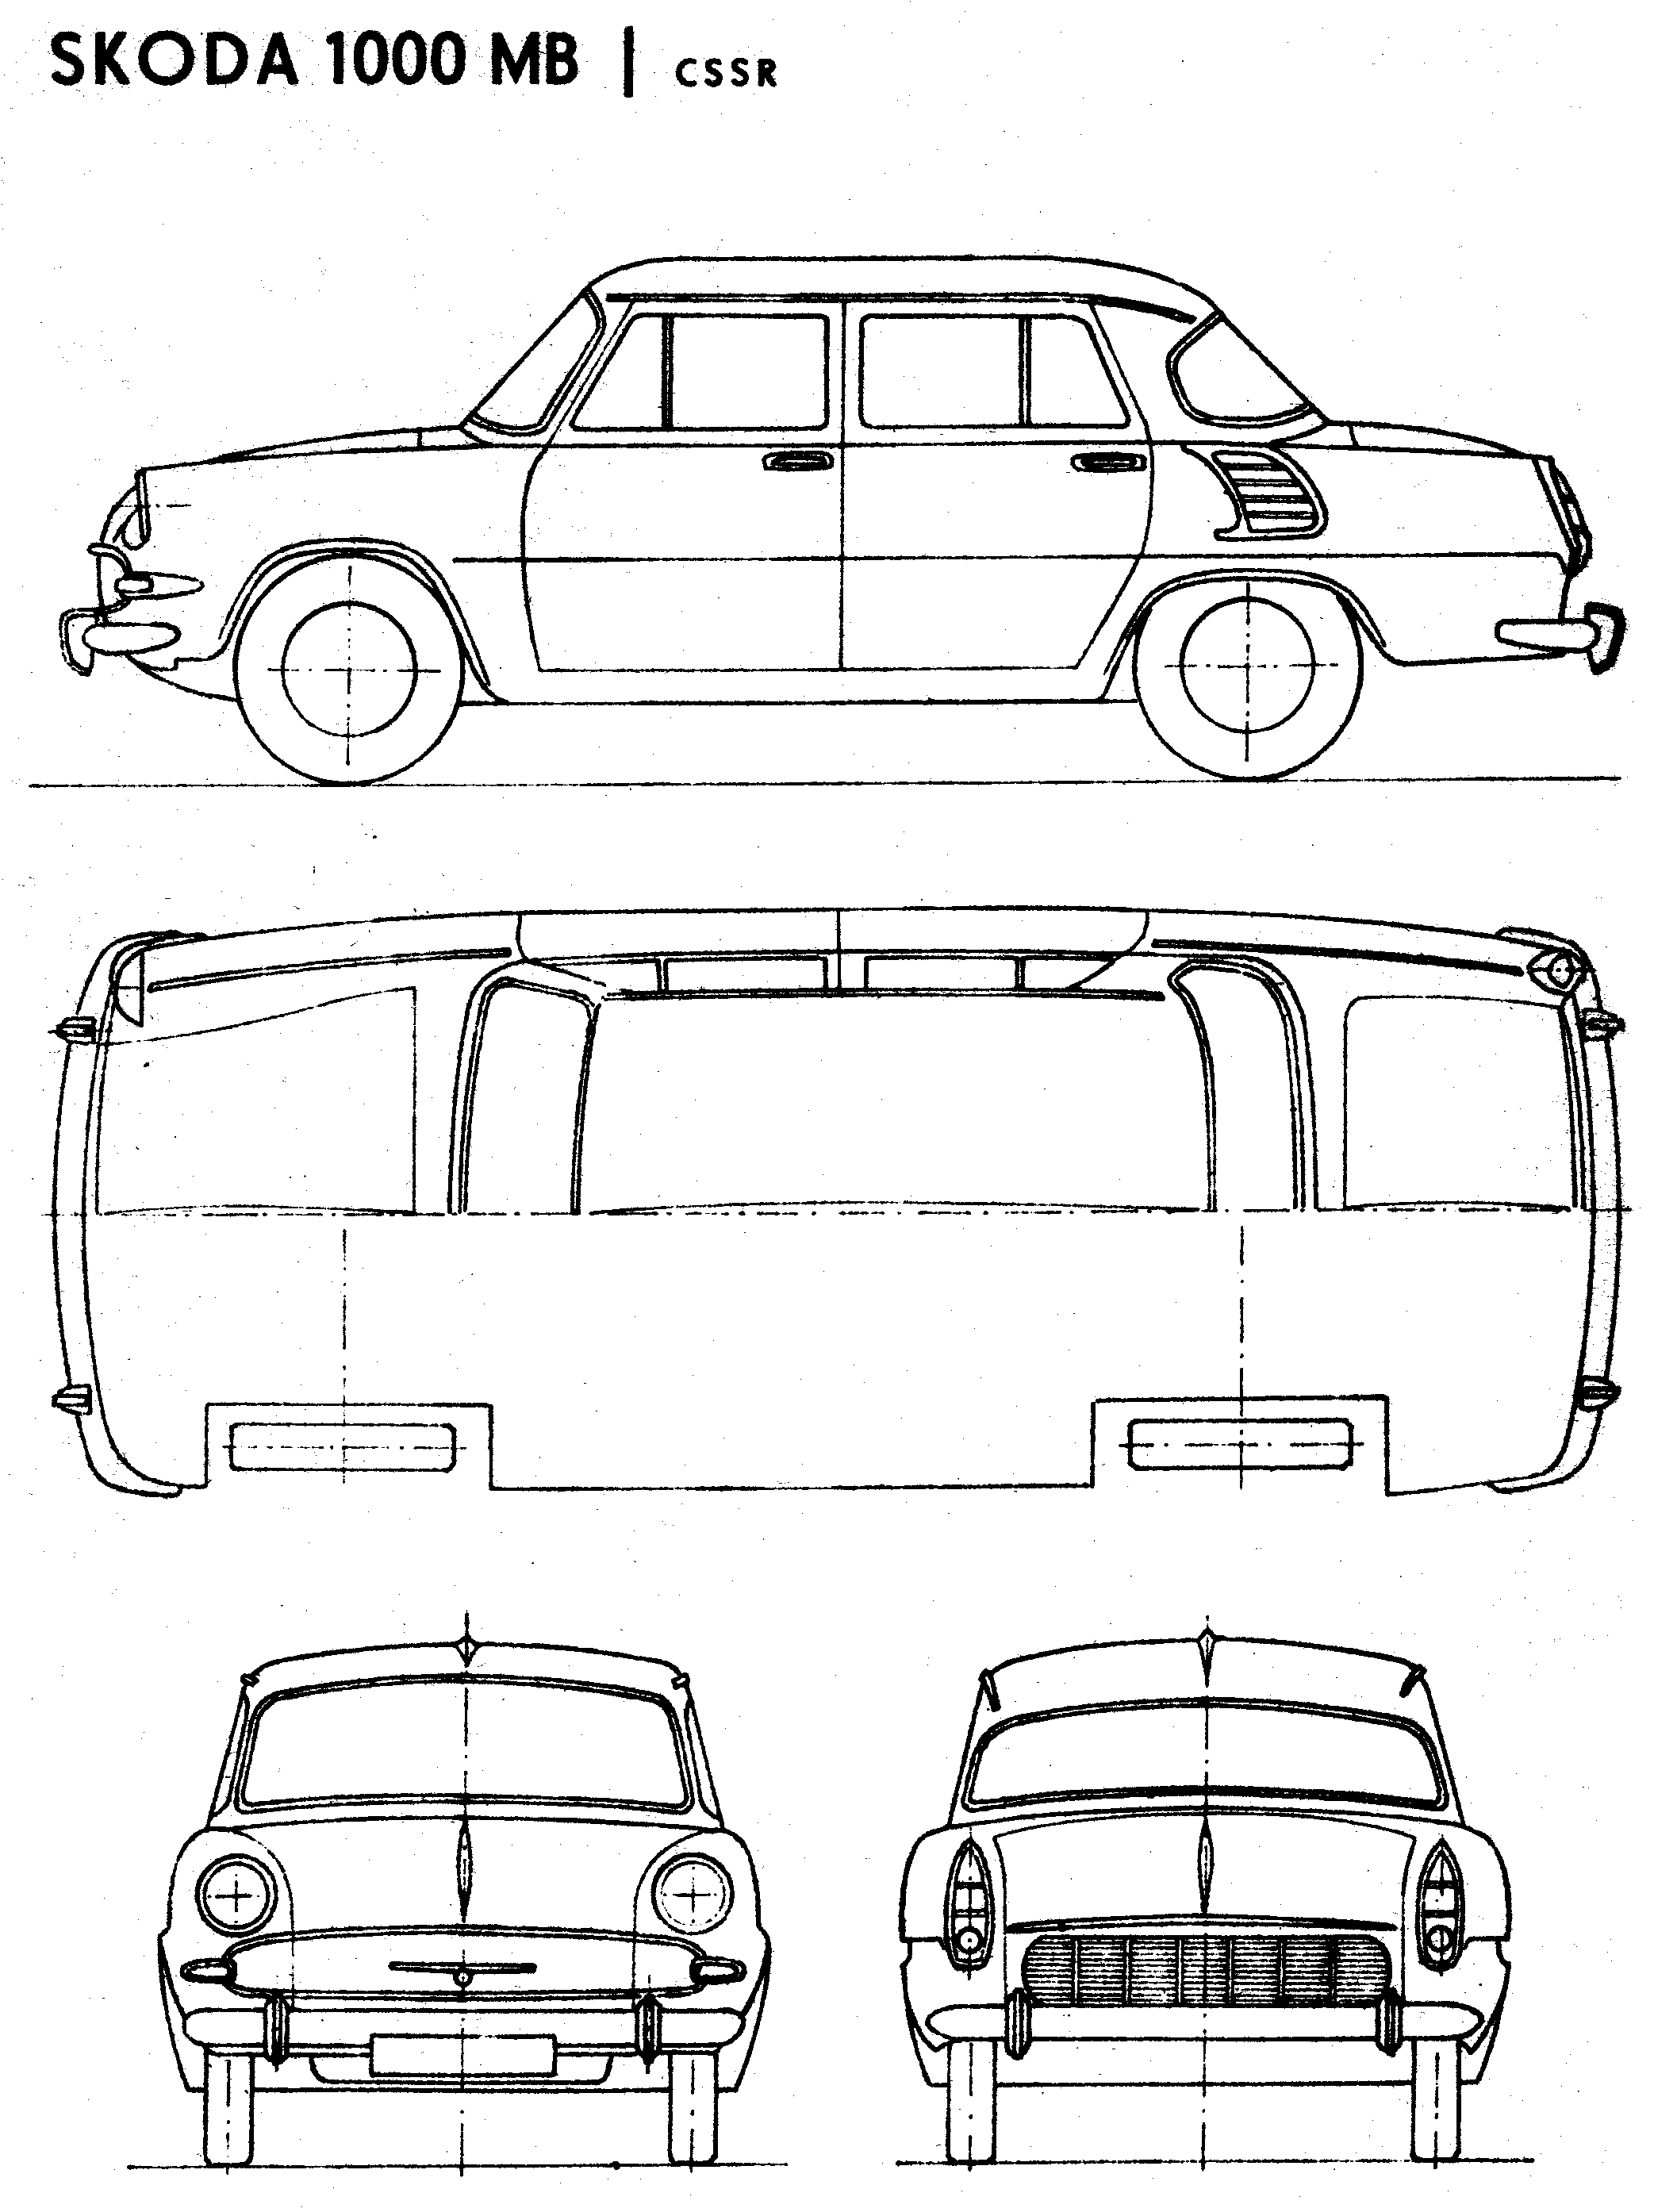 Škoda 1000 mb 1964